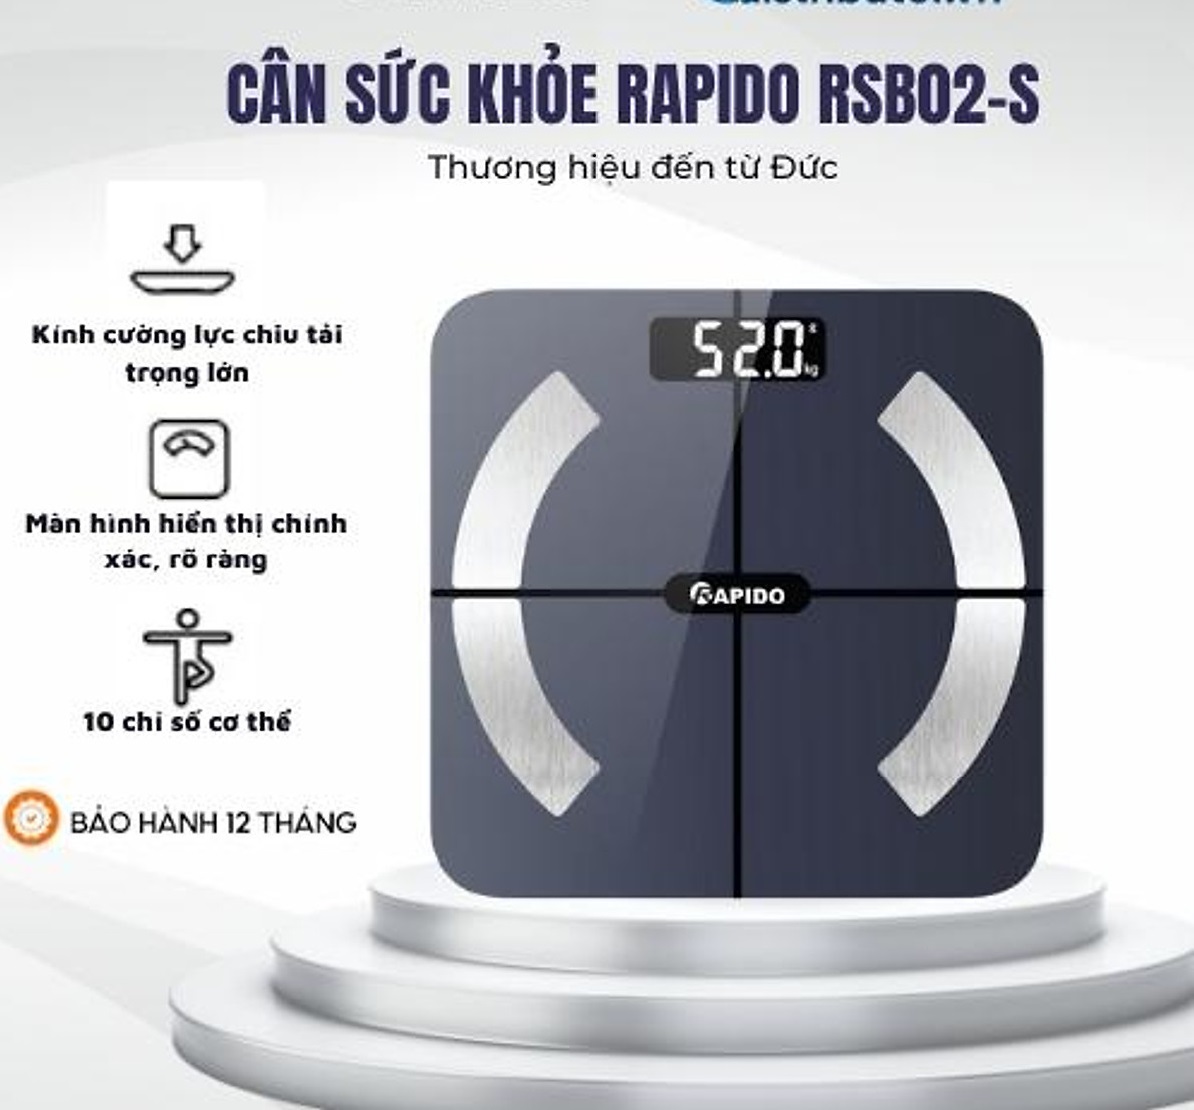 Cân Sức Khỏe Thông Minh Rapido RSB02-S màn hình LCD lớn kết nối bluetooth phân tích các chỉ số cơ thể,  lượng mỡ, lượng chất khoa học